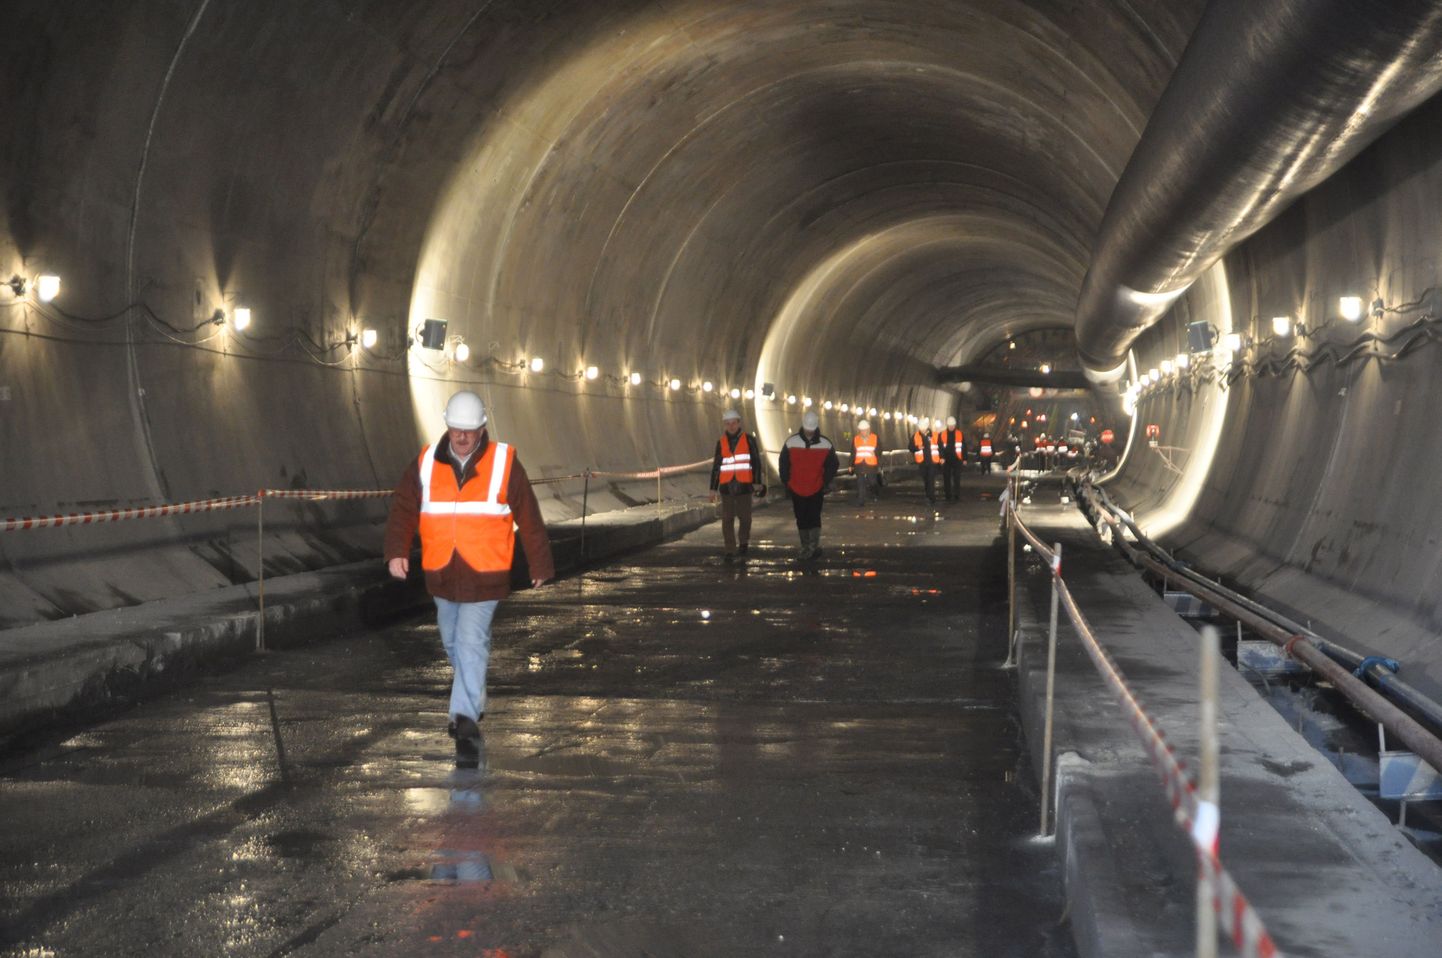 Helsingi–Tallinna tunneli projekt võib jõuda maakonnaplaneeringusse.